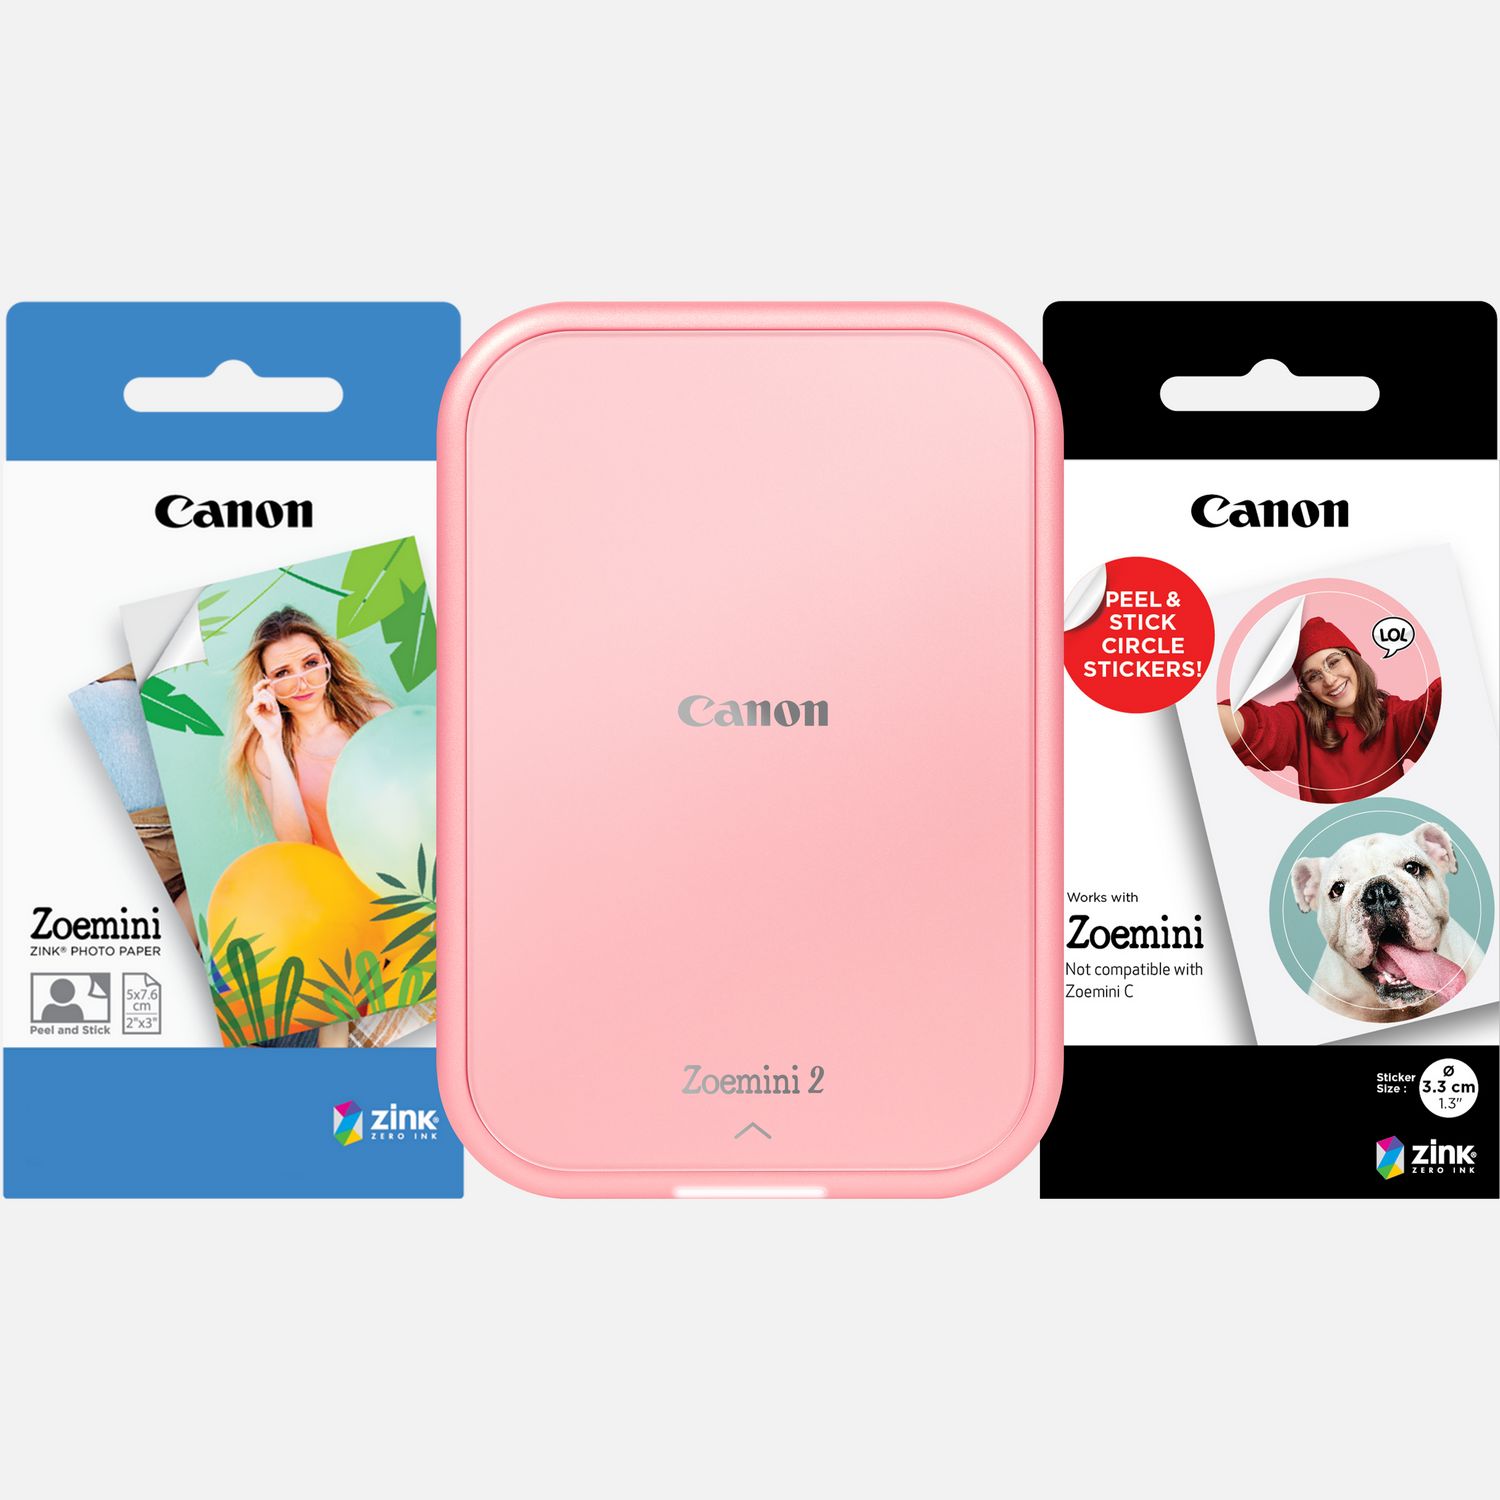 Stampante fotografica portatile a colori Canon Zoemini 2, rosa gold + Carta fotografica ZINK™ 5 x 7,6 cm (20 fogli) + Carta adesiva circolare ZINK™ 3,3 cm (10 fogli)